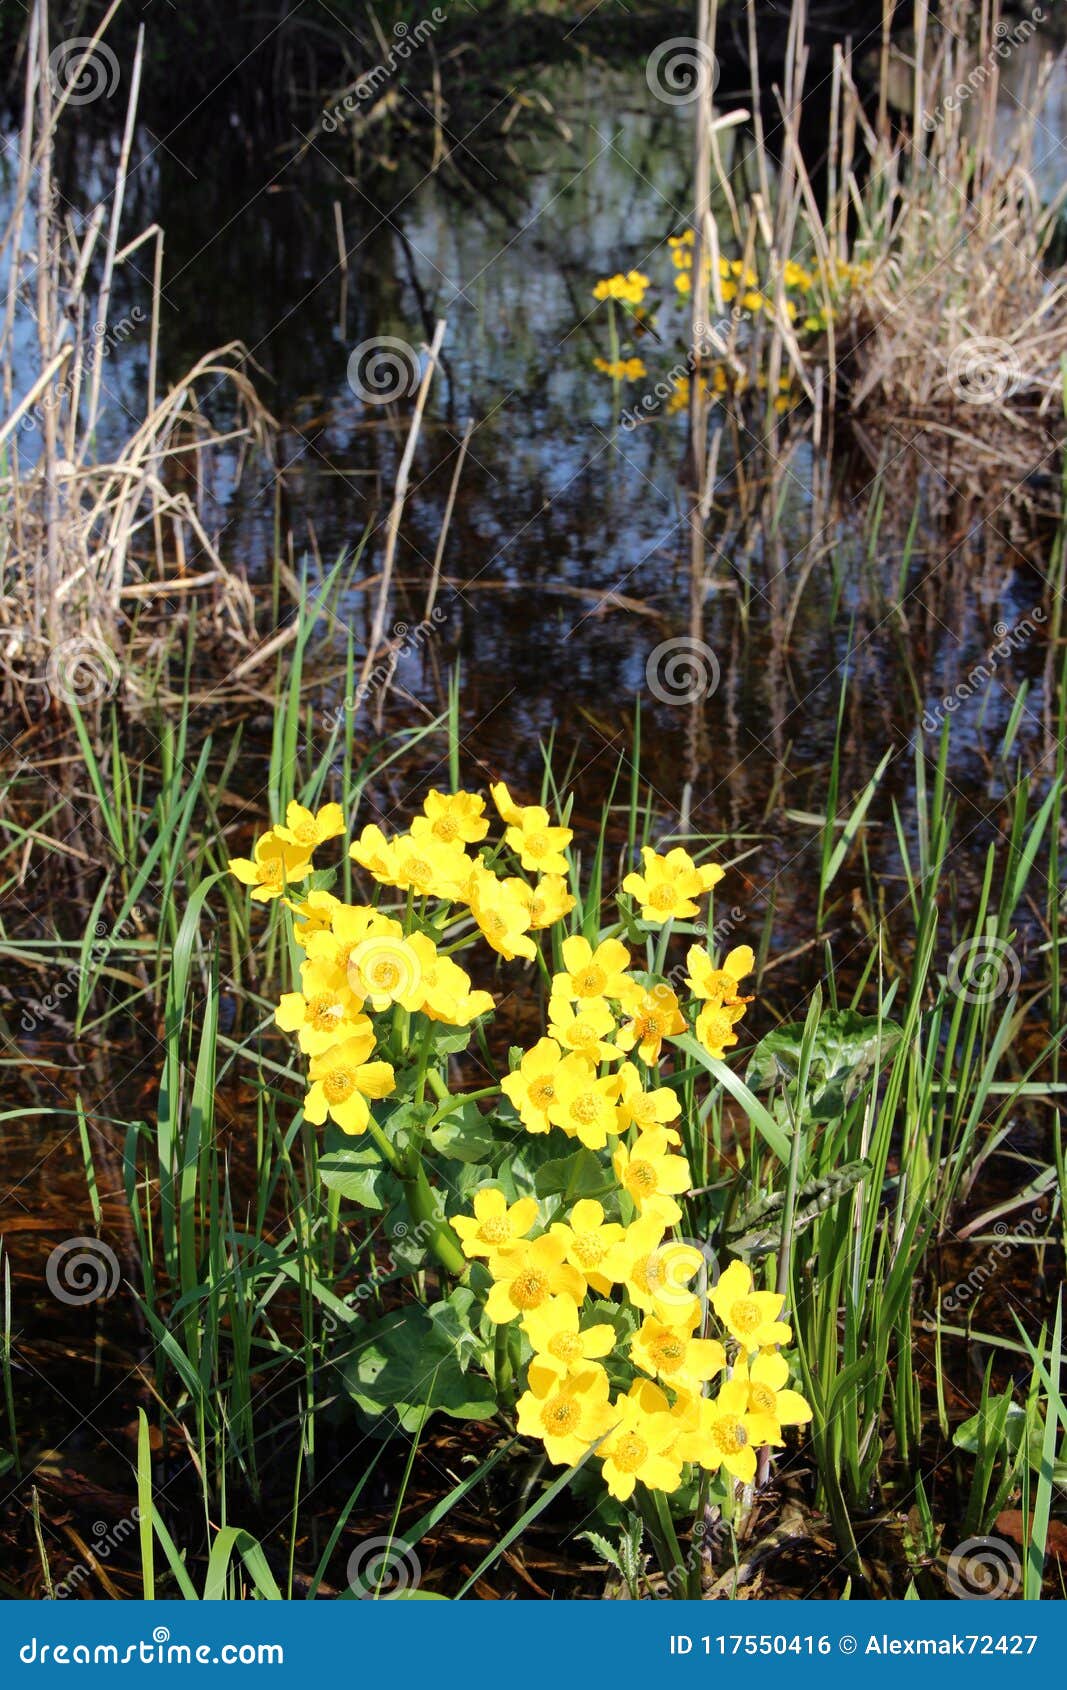 caltha palustris growing in swamp. spring flowers. marsh marigold flowers